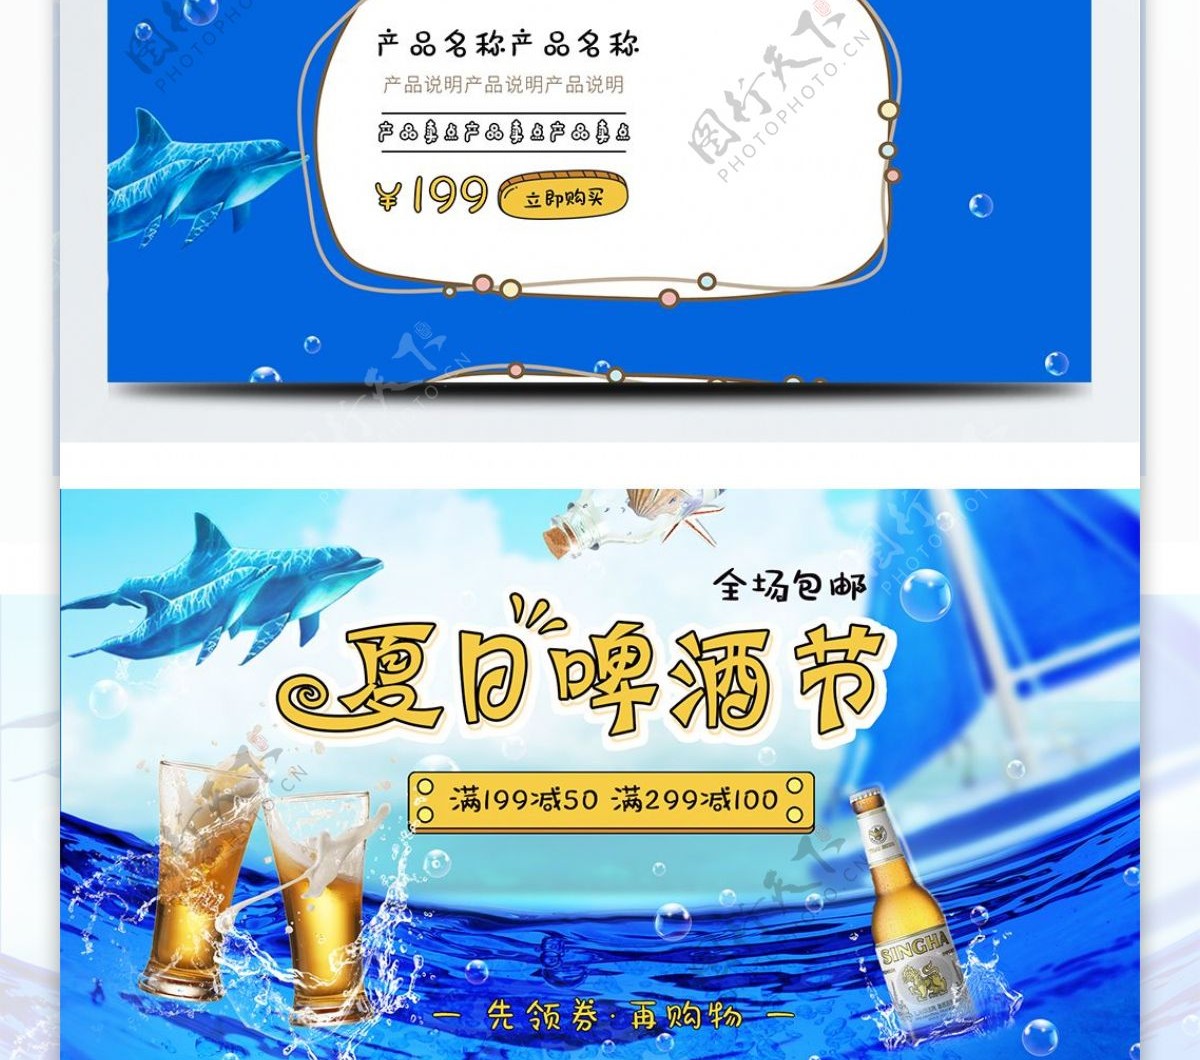 清新海洋夏日啤酒节首页模板